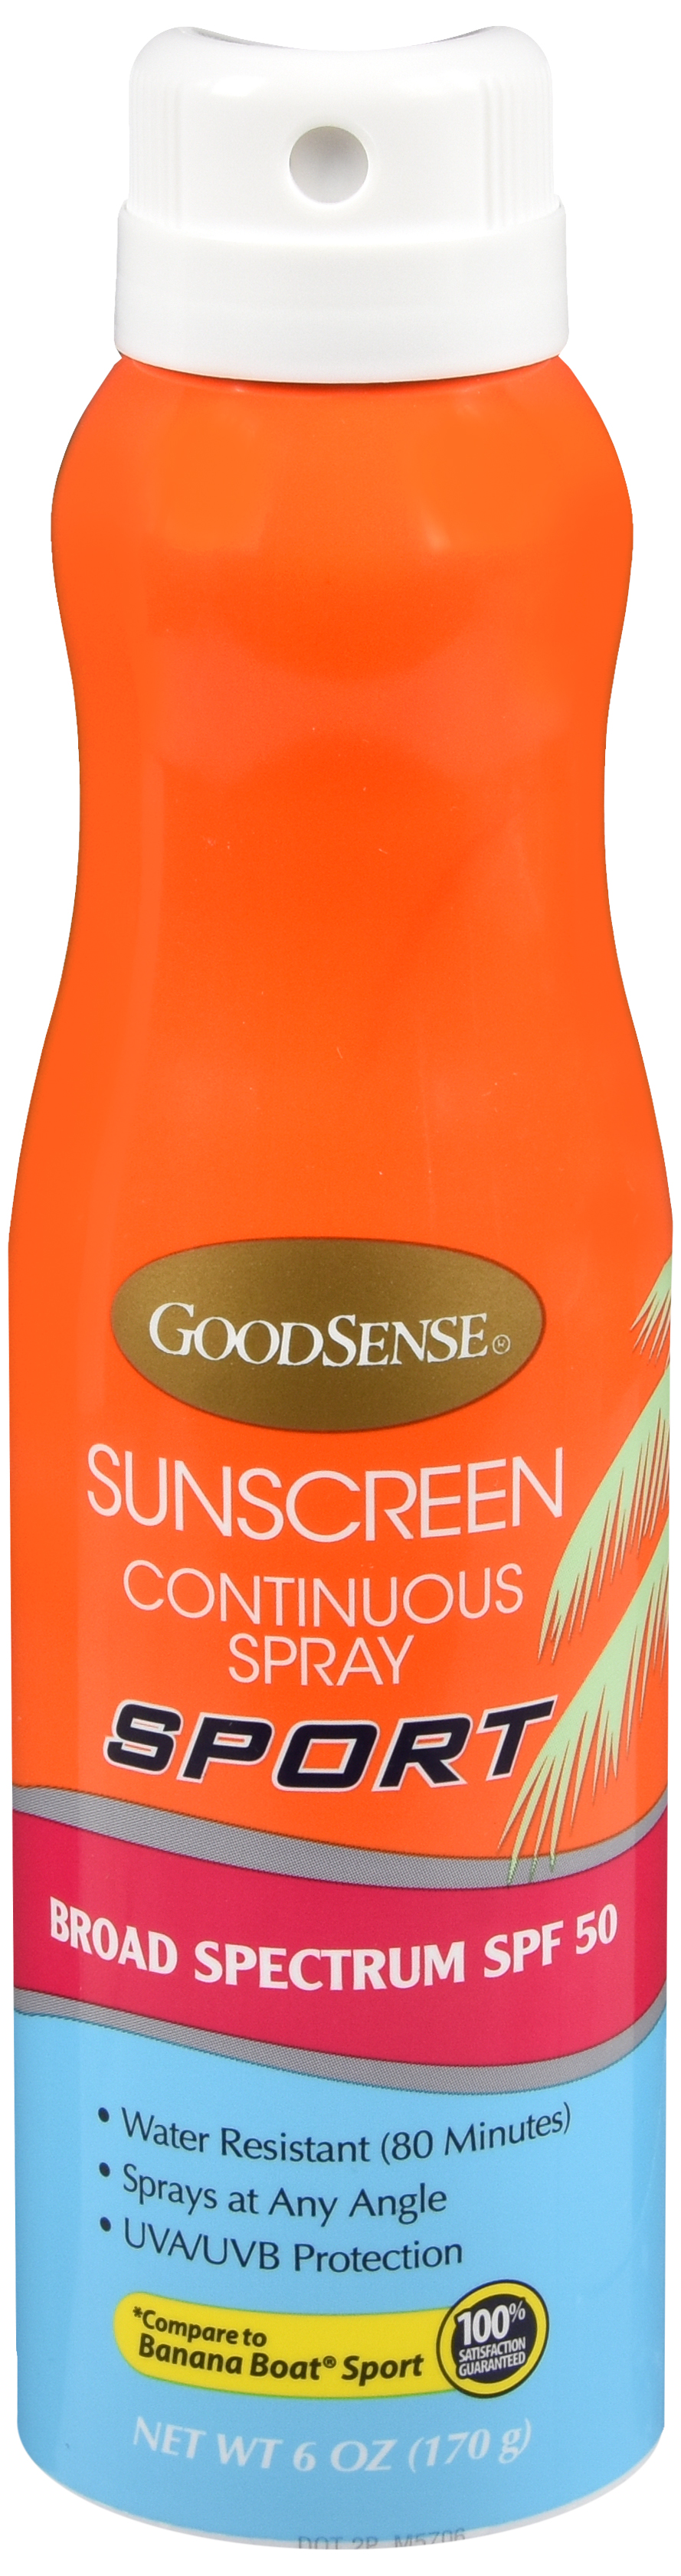 Goodsense spf50 sunscreen con spray 6oz